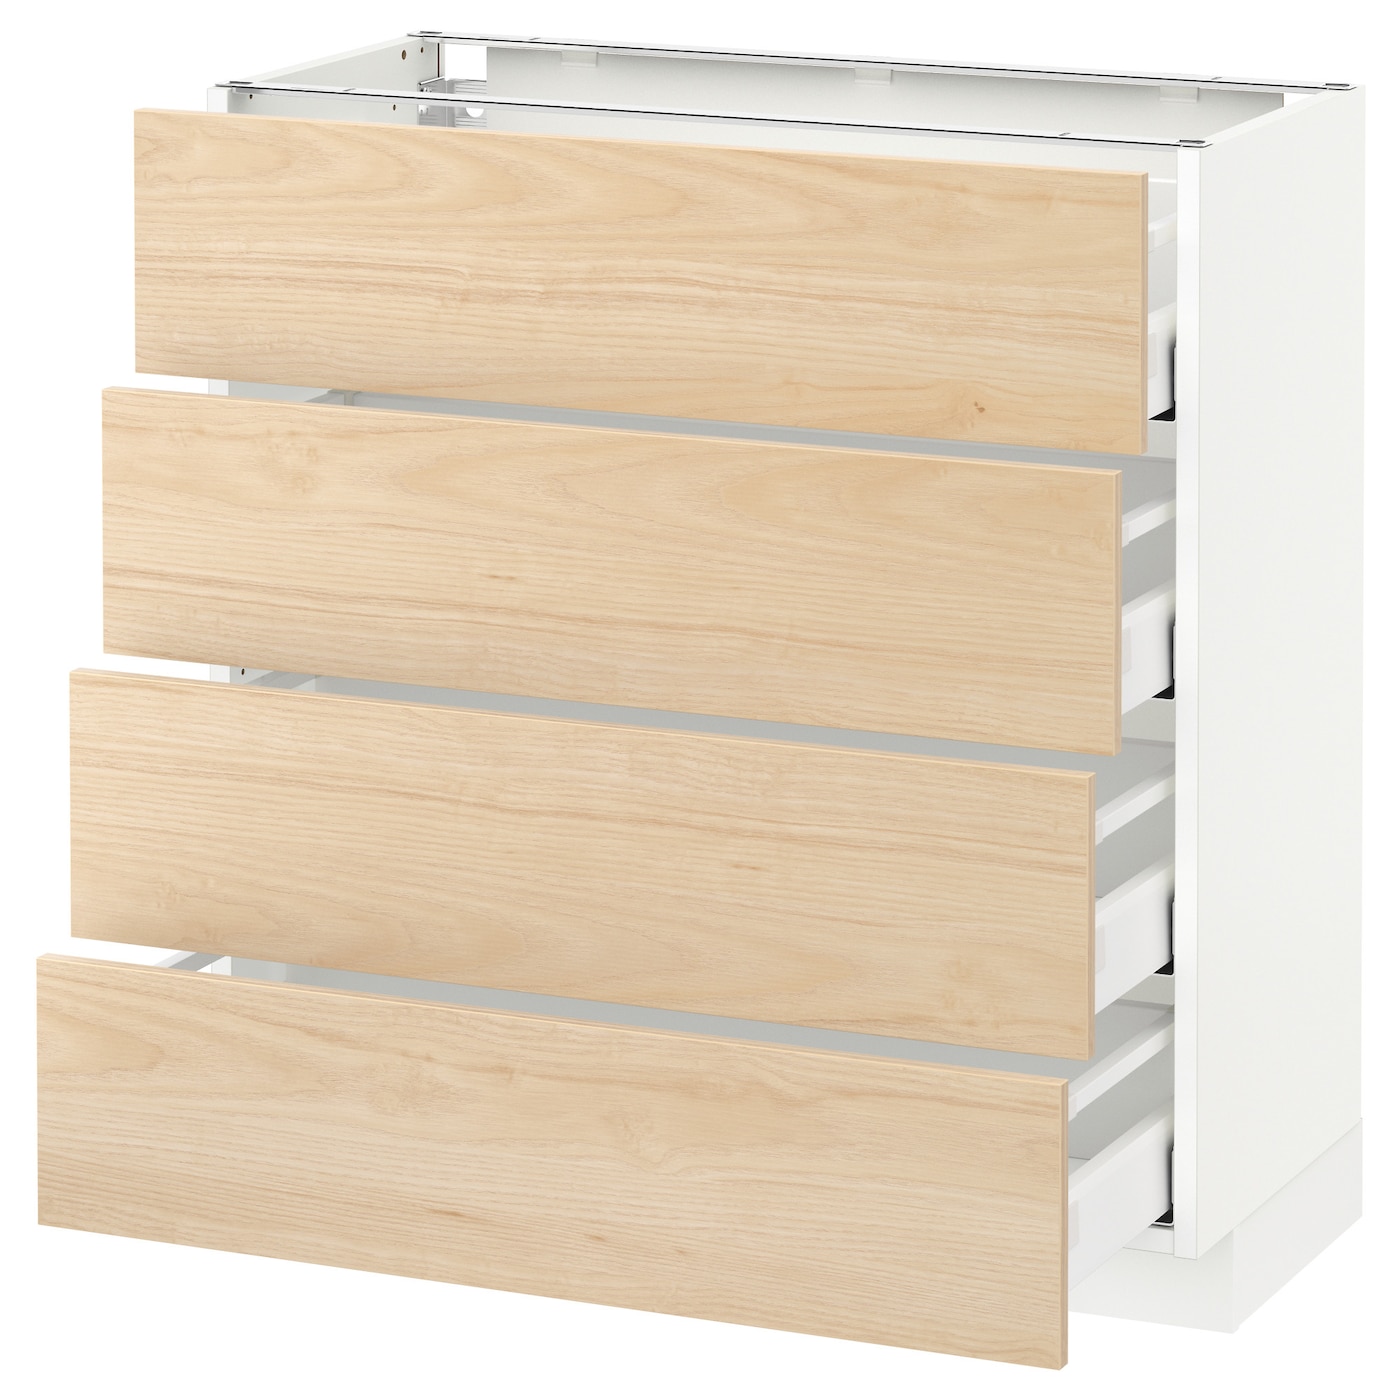 Напольный кухонный шкаф  - IKEA METOD MAXIMERA, 88x39x80см, белый/светлый ясень, МЕТОД МАКСИМЕРА ИКЕА